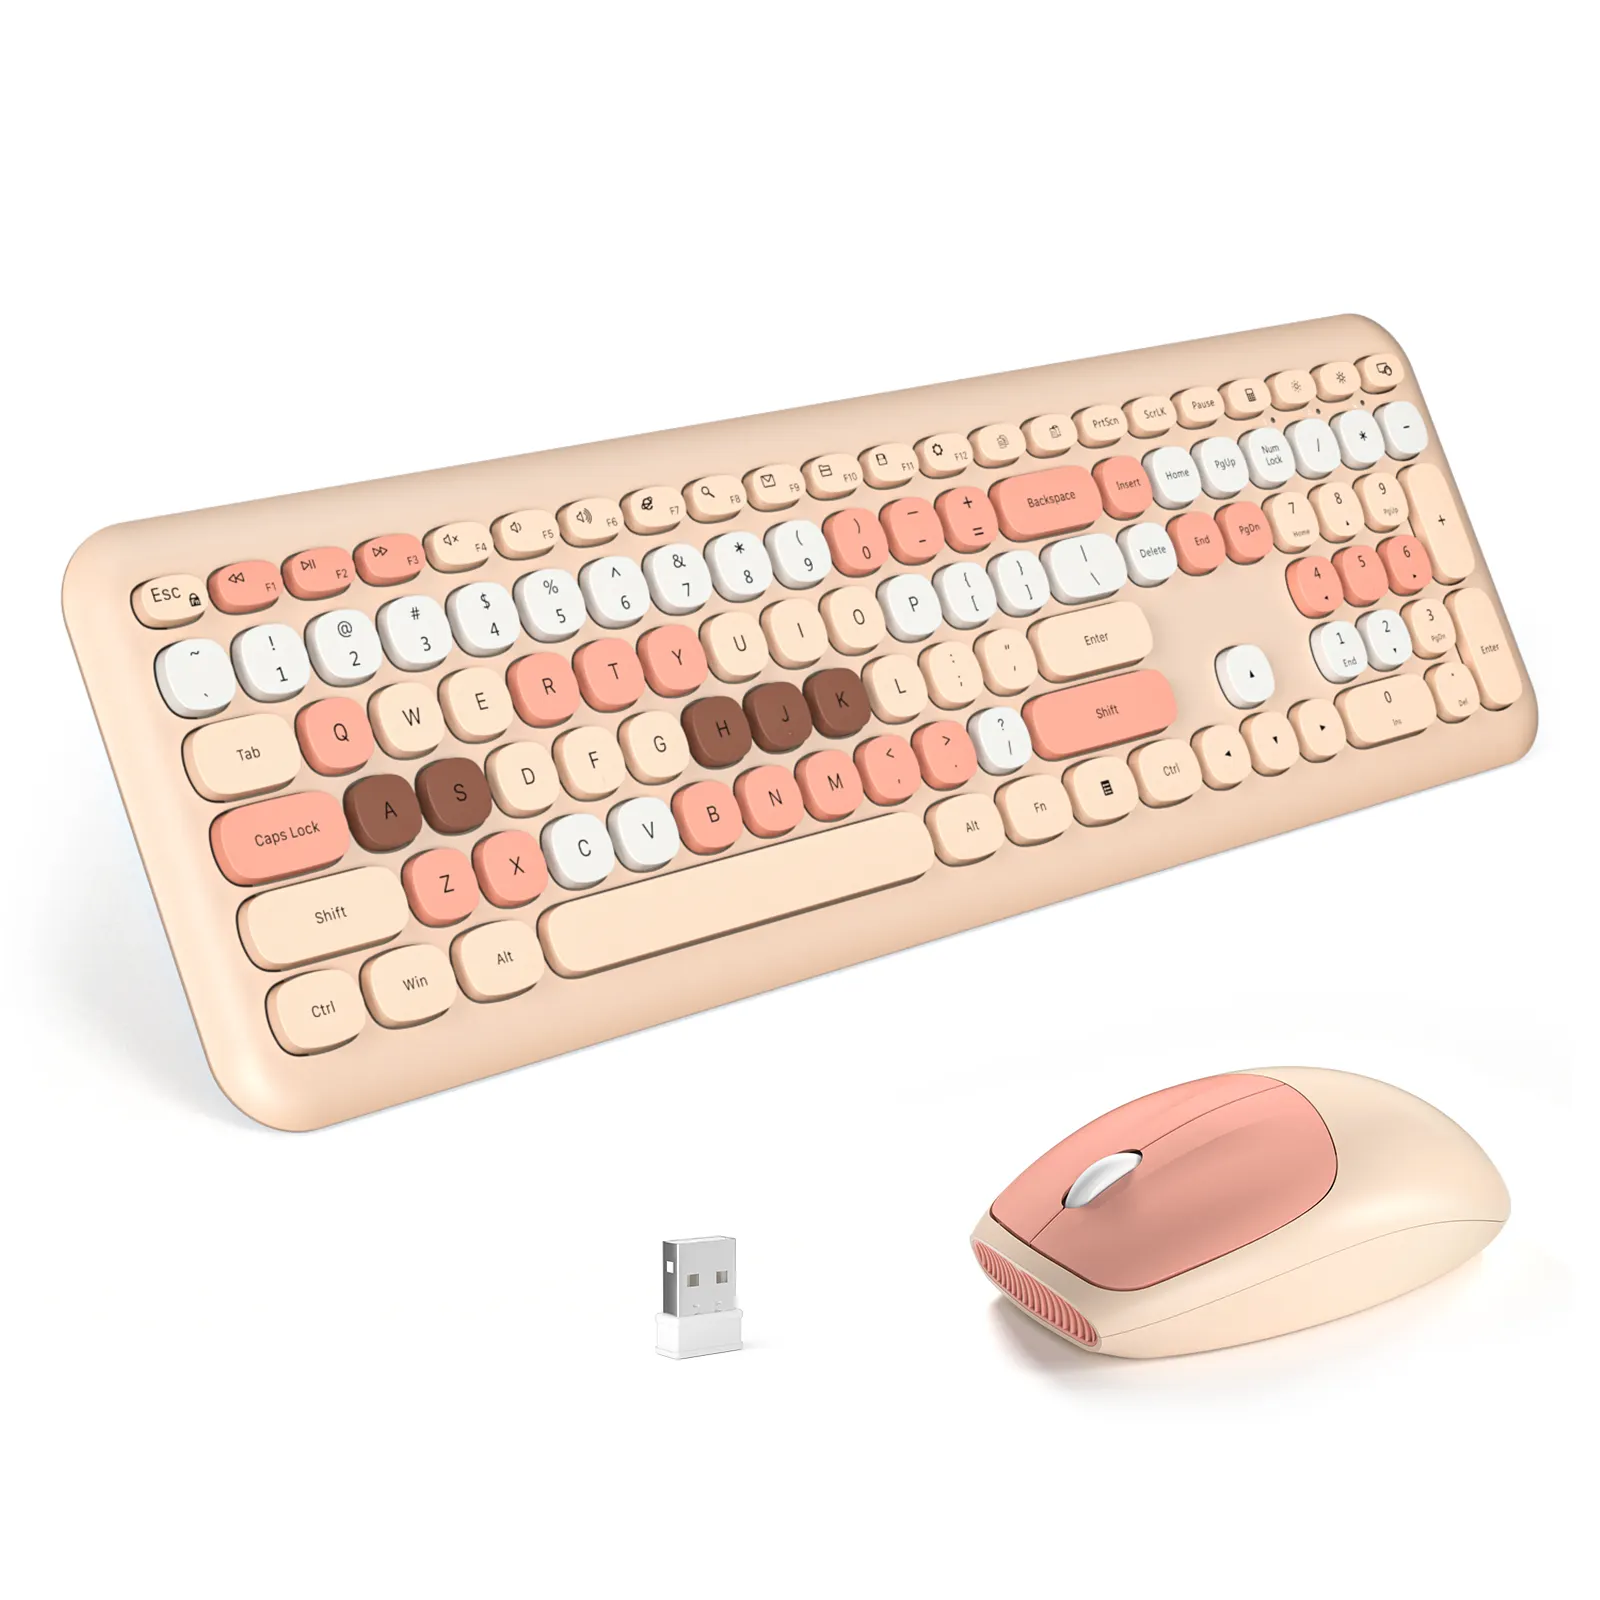 MOFii Set Kombo Keyboard Mouse Backlit nirkabel RGB 2.4G, langsung ramping, Set stok & Siap Dijual